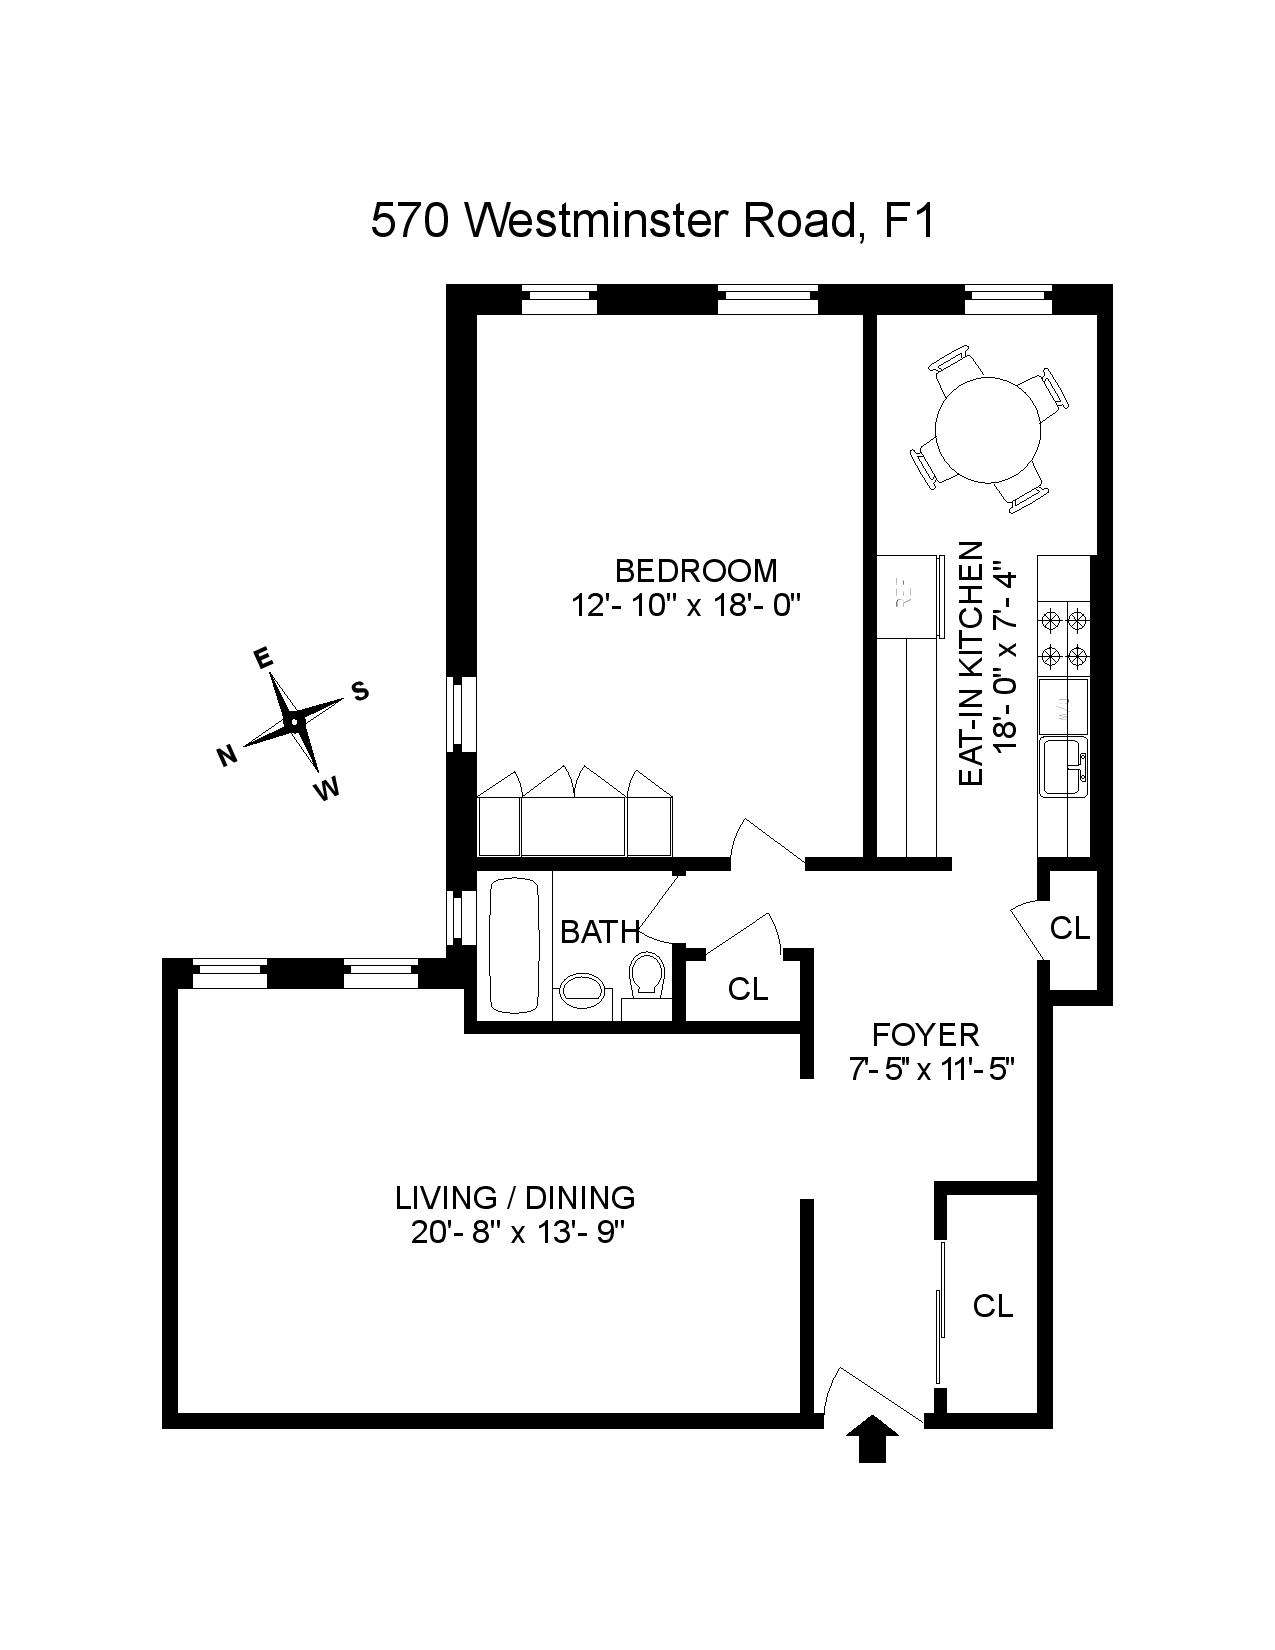 Floorplan of 570 Westminster Rd